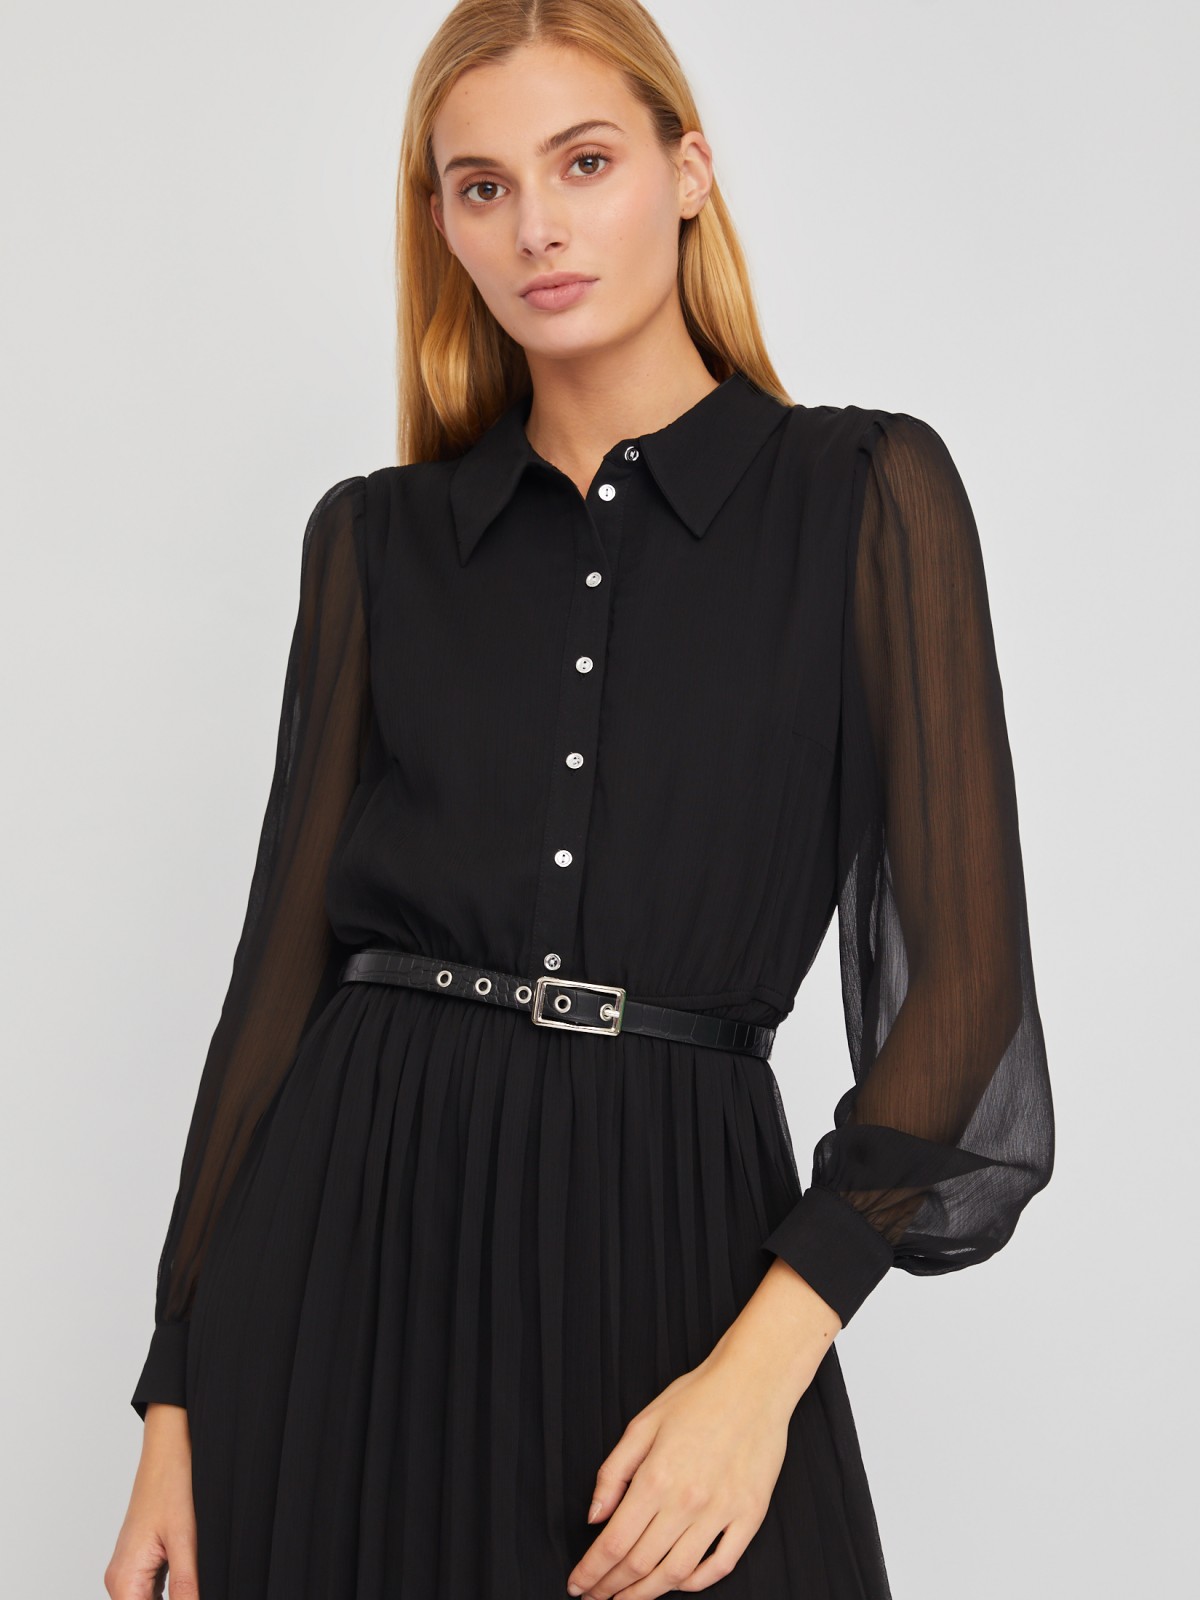 Шифоновое платье-рубашка длины миди с плиссировкой и акцентном на талии zolla 024118262033, цвет черный, размер S - фото 3